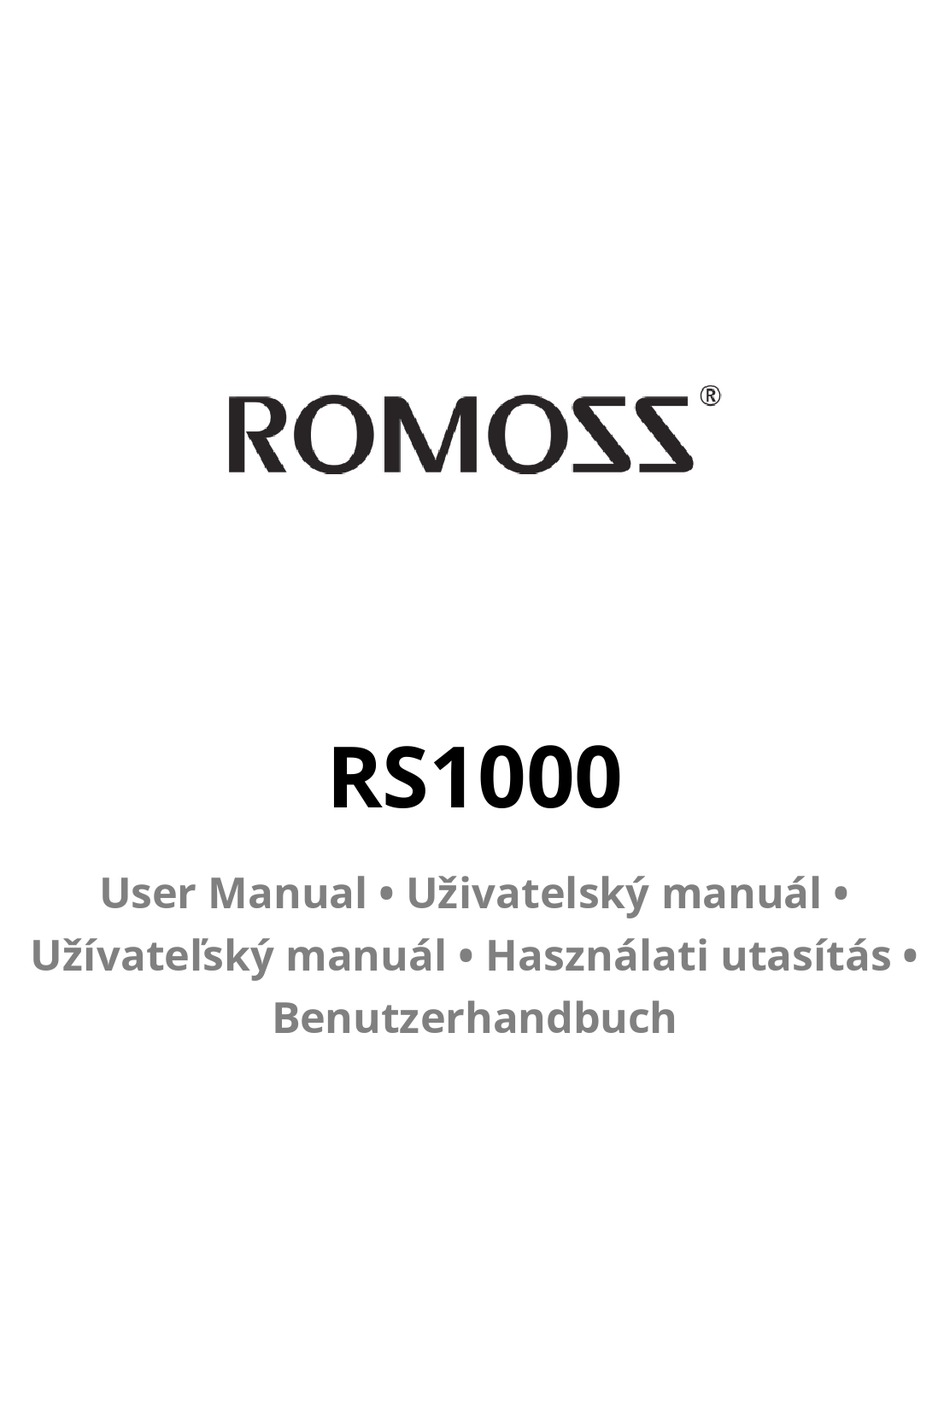 ROMOSS RS1000 USER MANUAL Pdf Download | ManualsLib